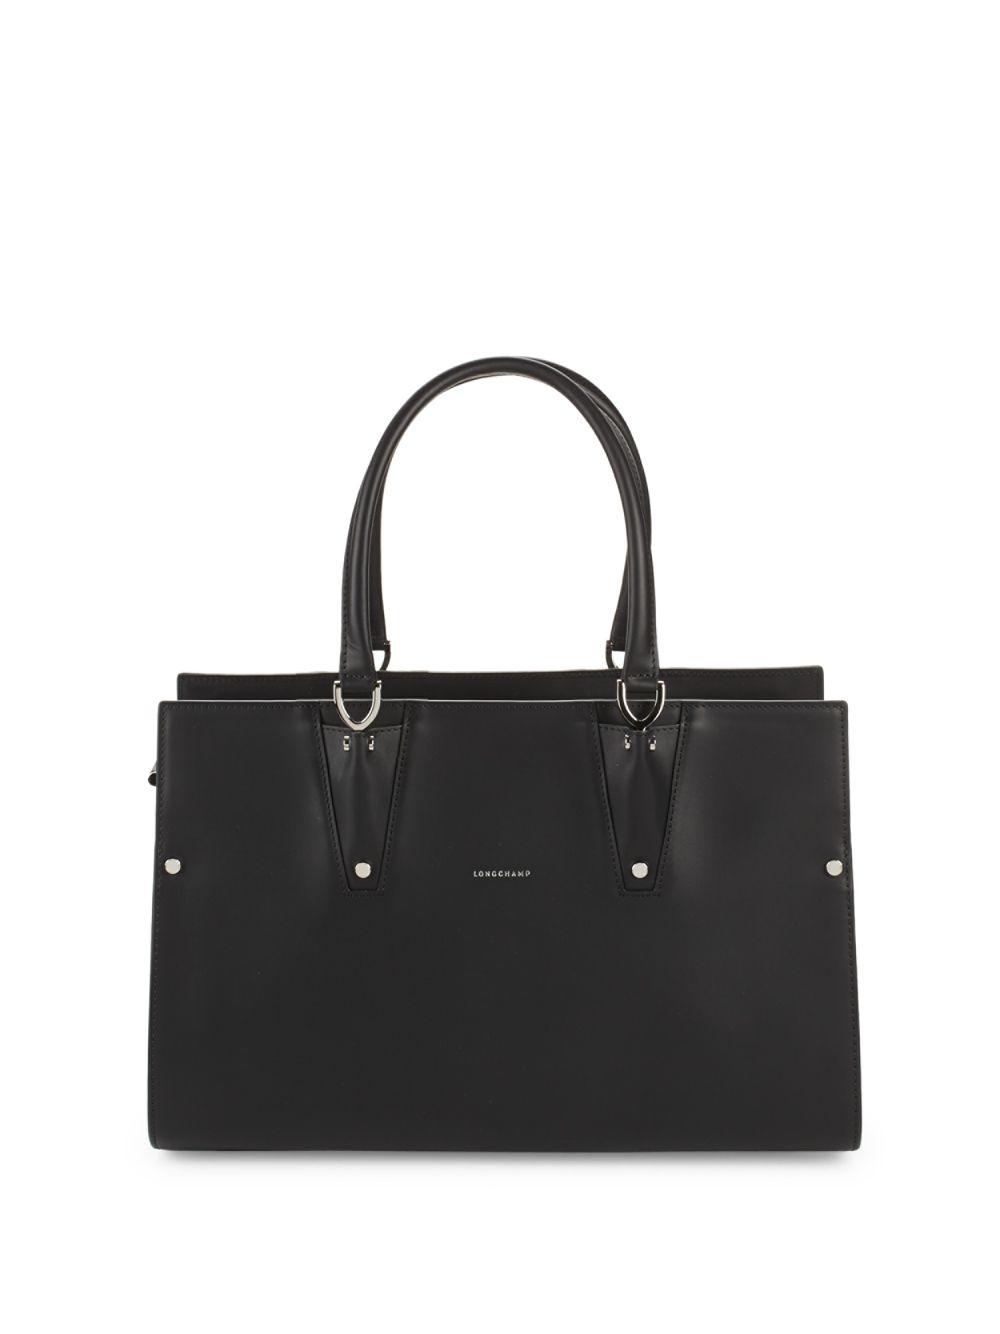 Longchamp Small Paris Premier Tote Bag in Black | Lyst